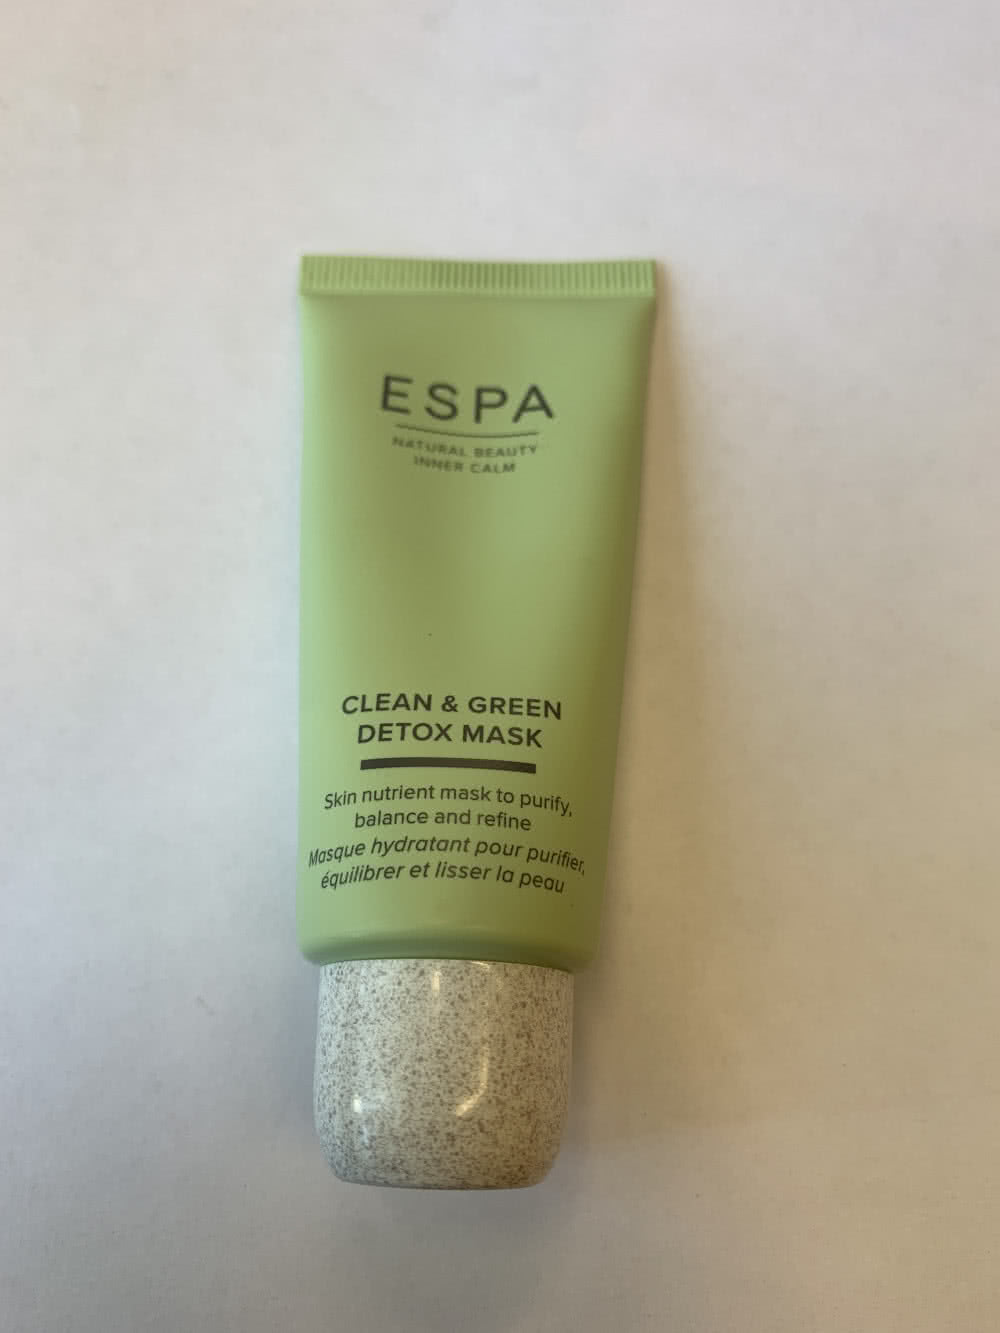 Espa, Clean and Green Detox Mask, 30ml